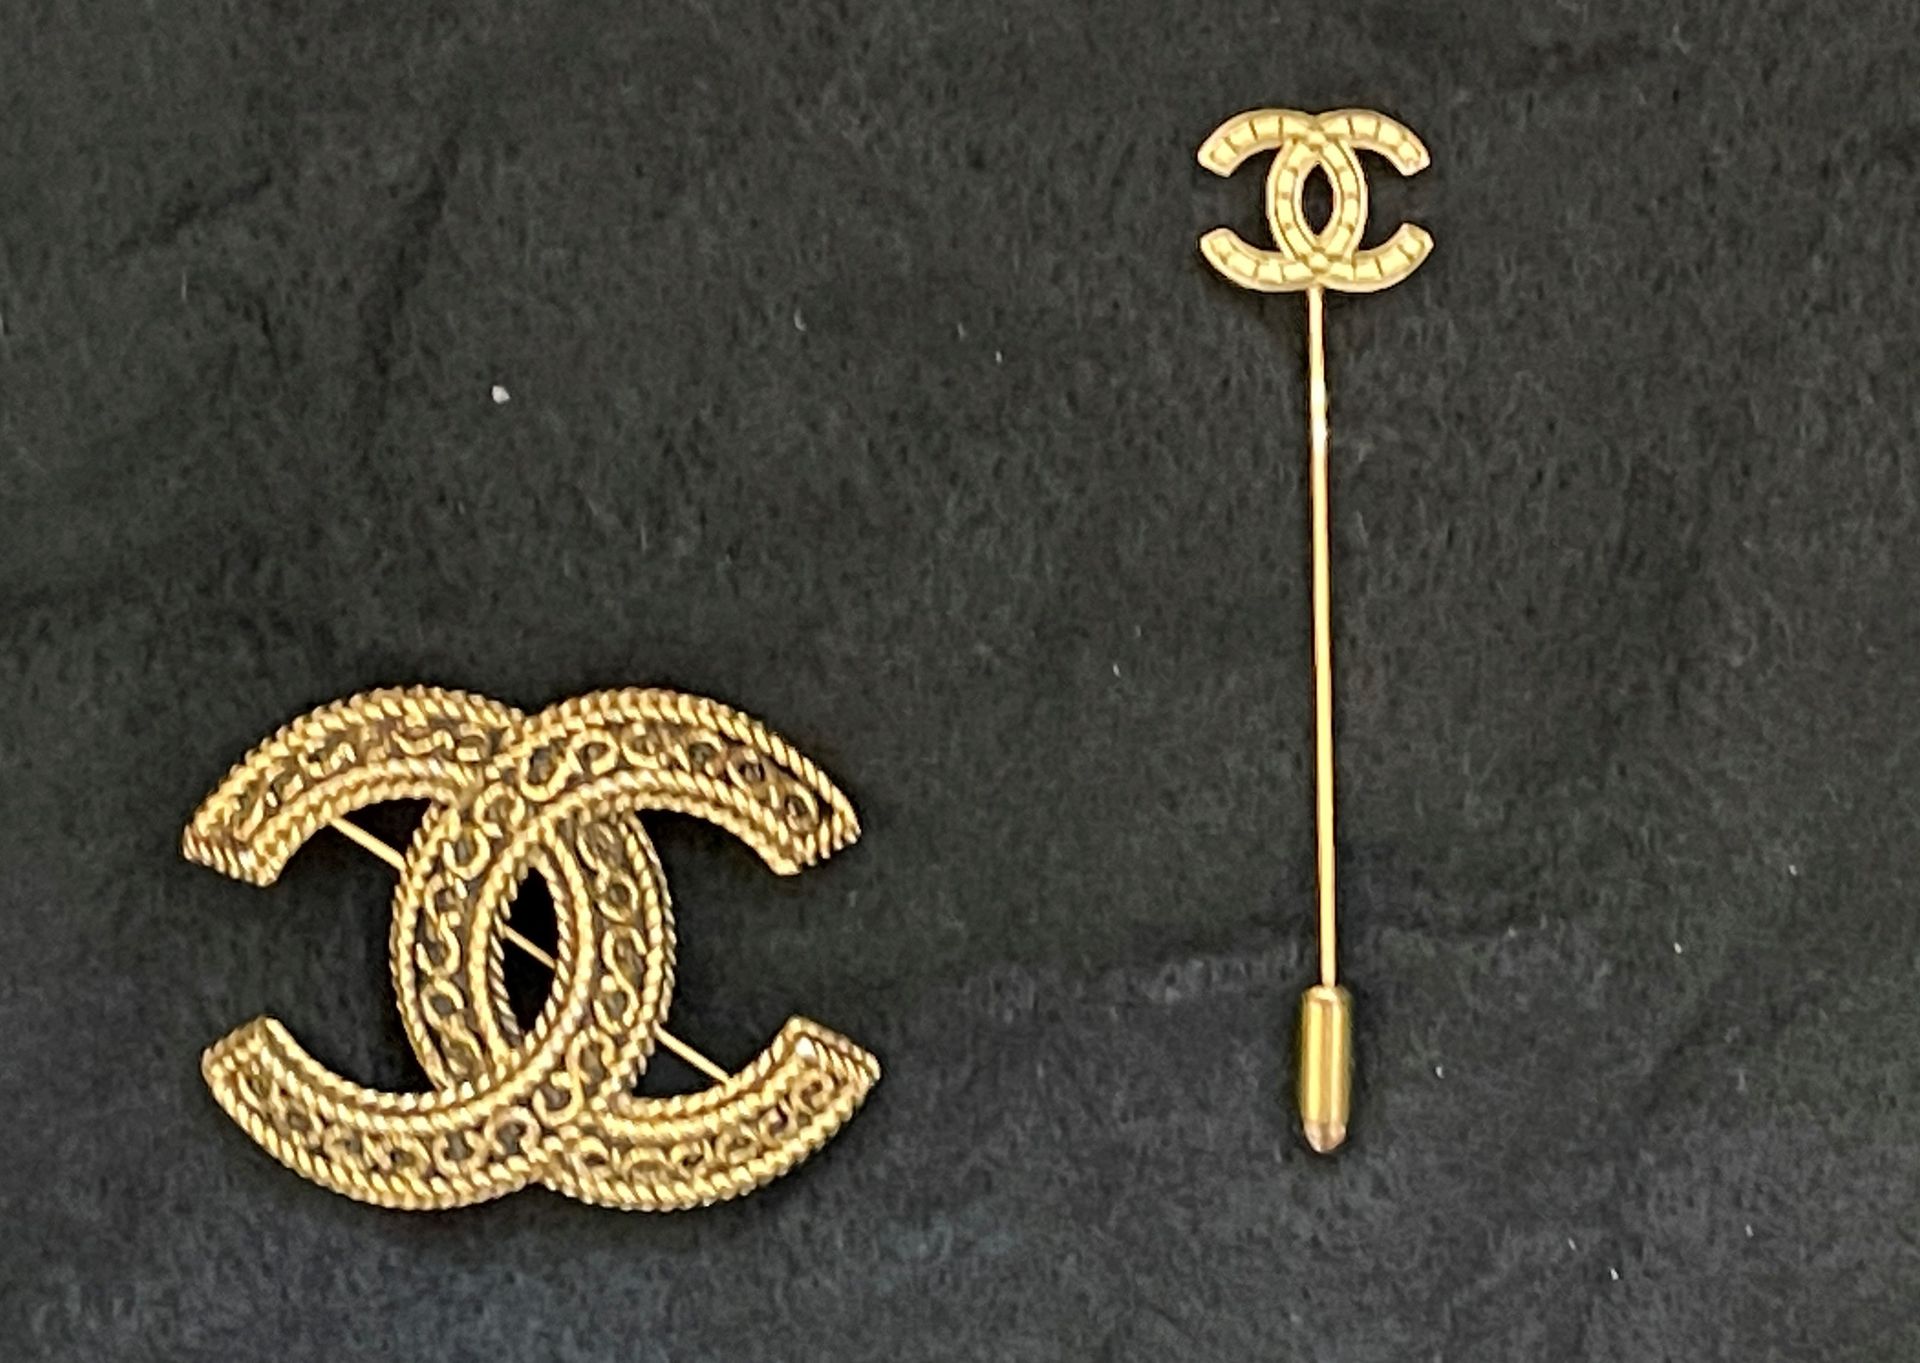 Null 香奈儿。黑底鎏金金属的双C胸针。

有签名和编号的。

3,5 cm x 4,5 cm

有盒子。

鎏金金属的小领带针，上面有双C的字样。签名。